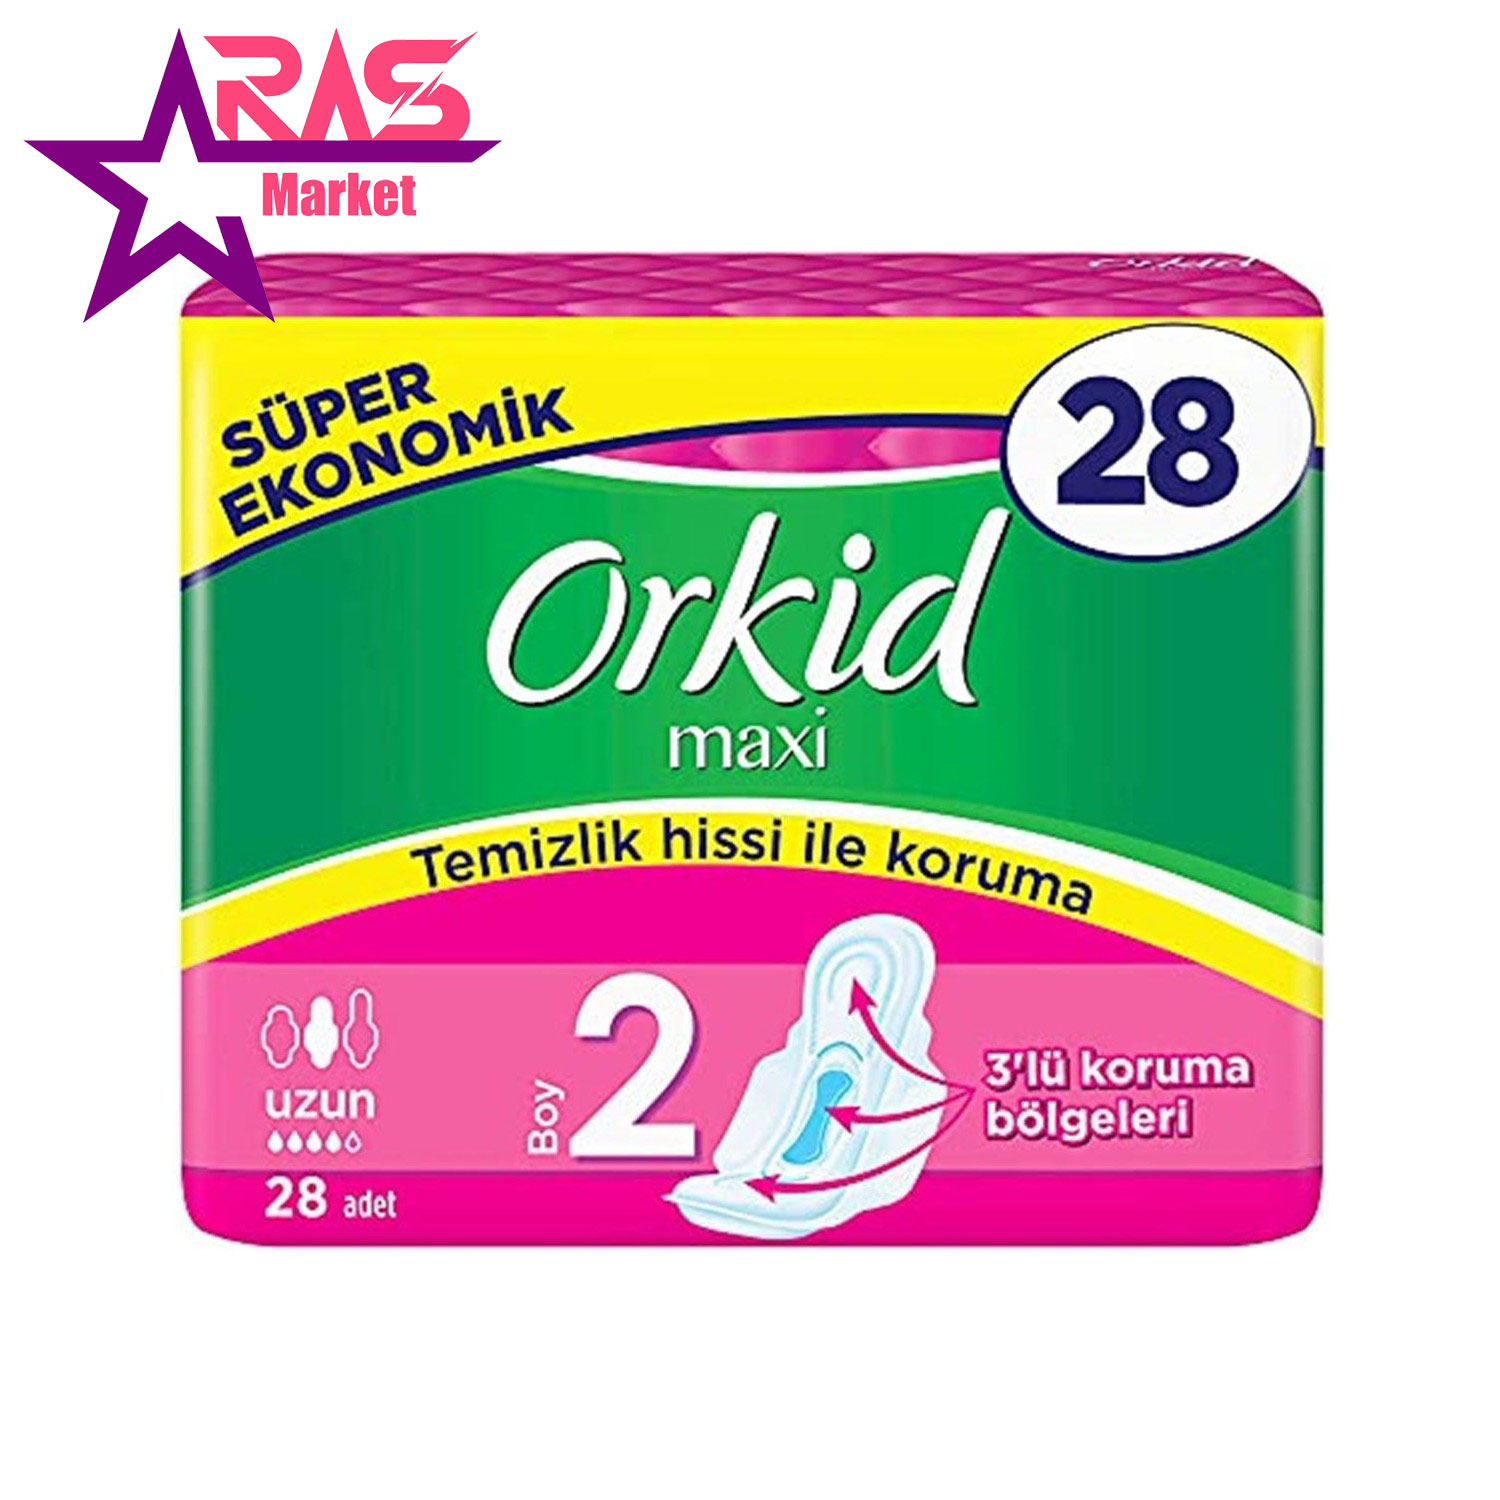 نوار بهداشتی ارکید مدل Orkid Maxi اندازه بزرگ 28 عددی ، فروشگاه اینترنتی ارس مارکت ، بهداشت بانوان